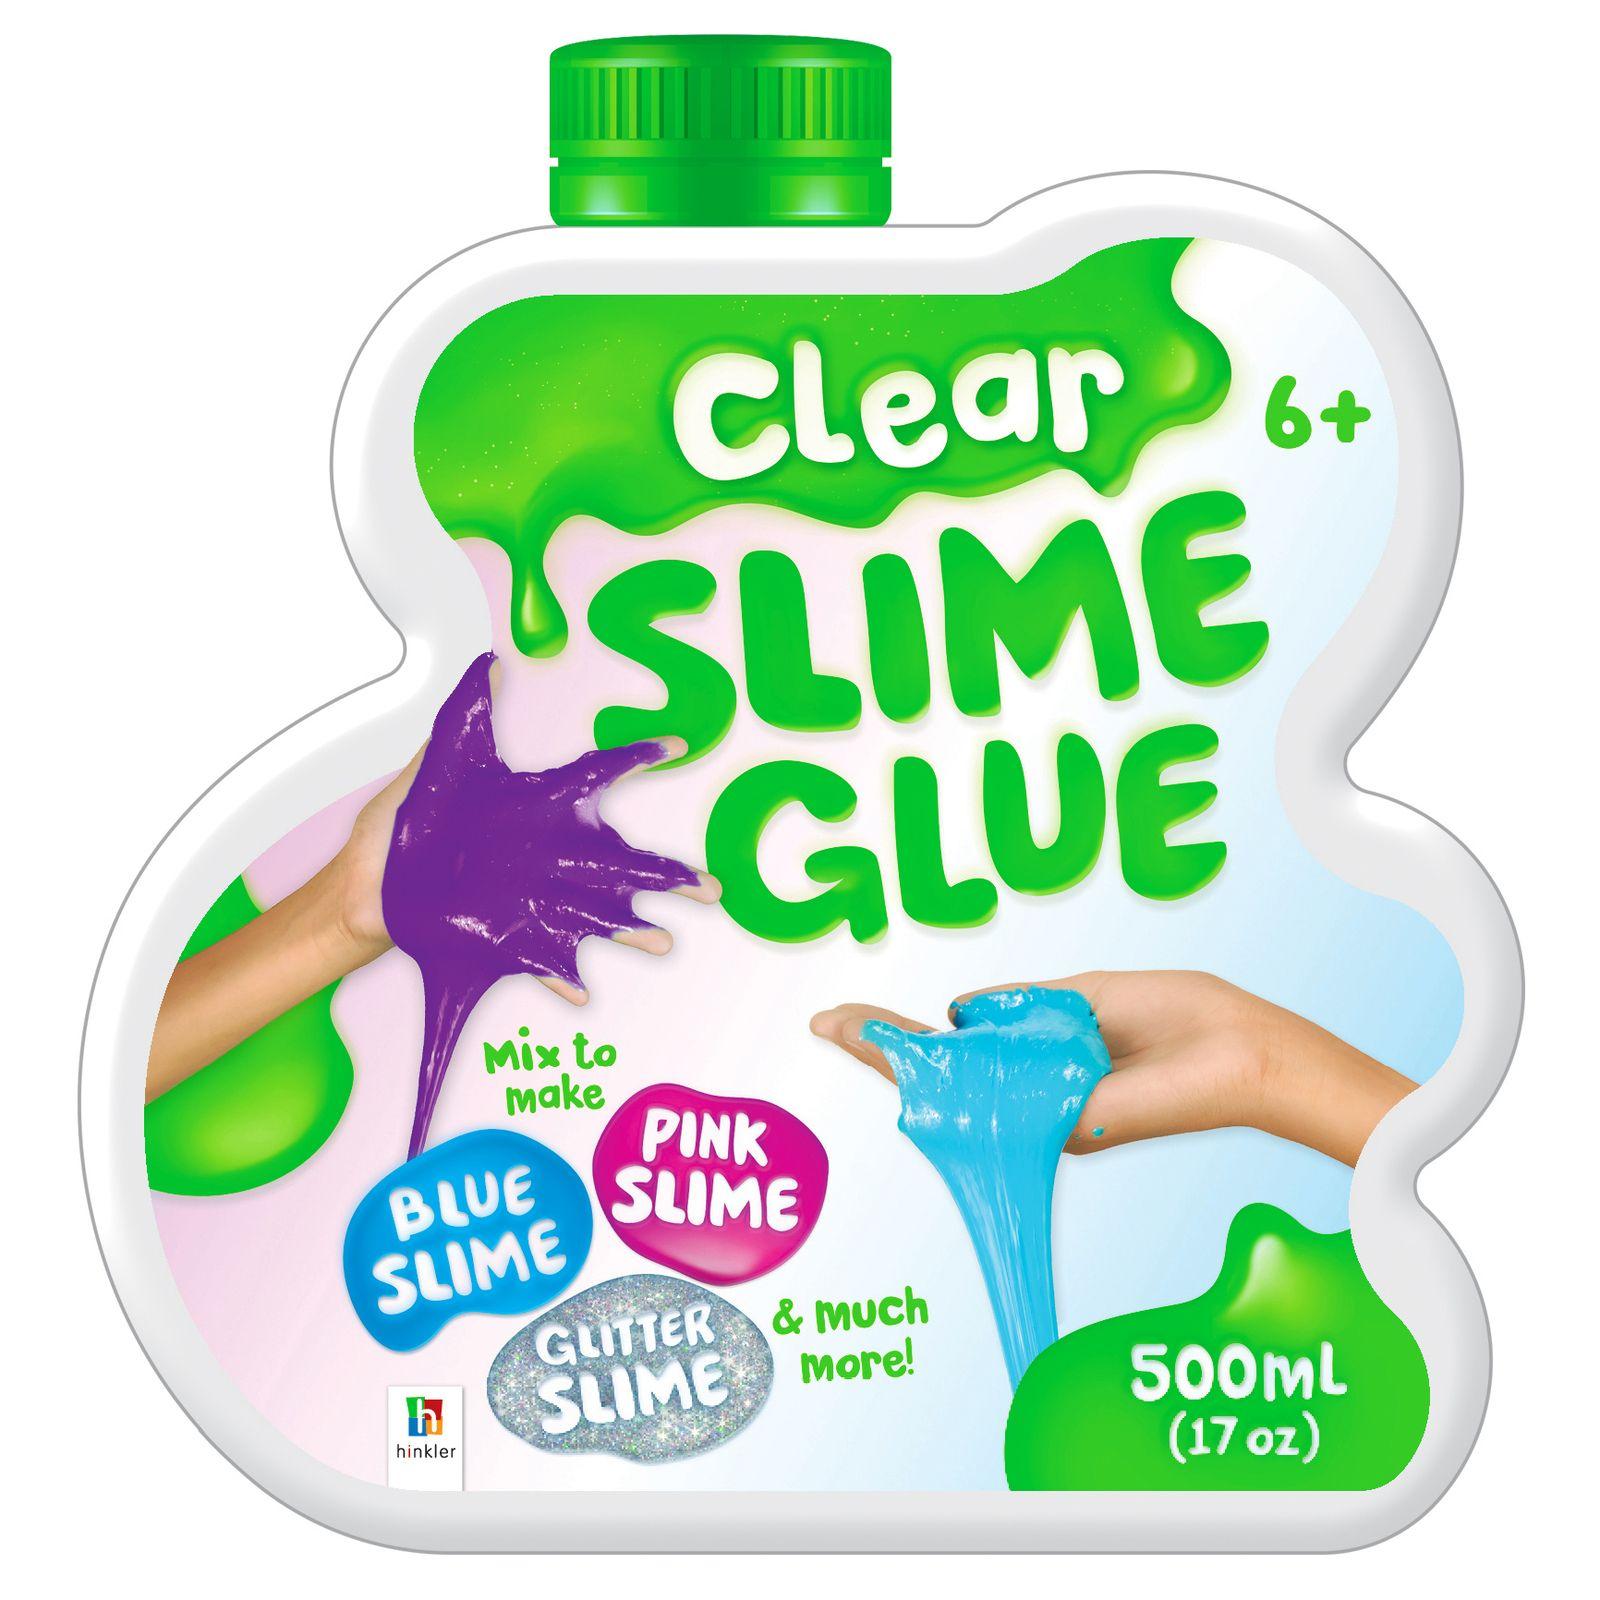 Clear Slime Logo - Clear Slime Glue